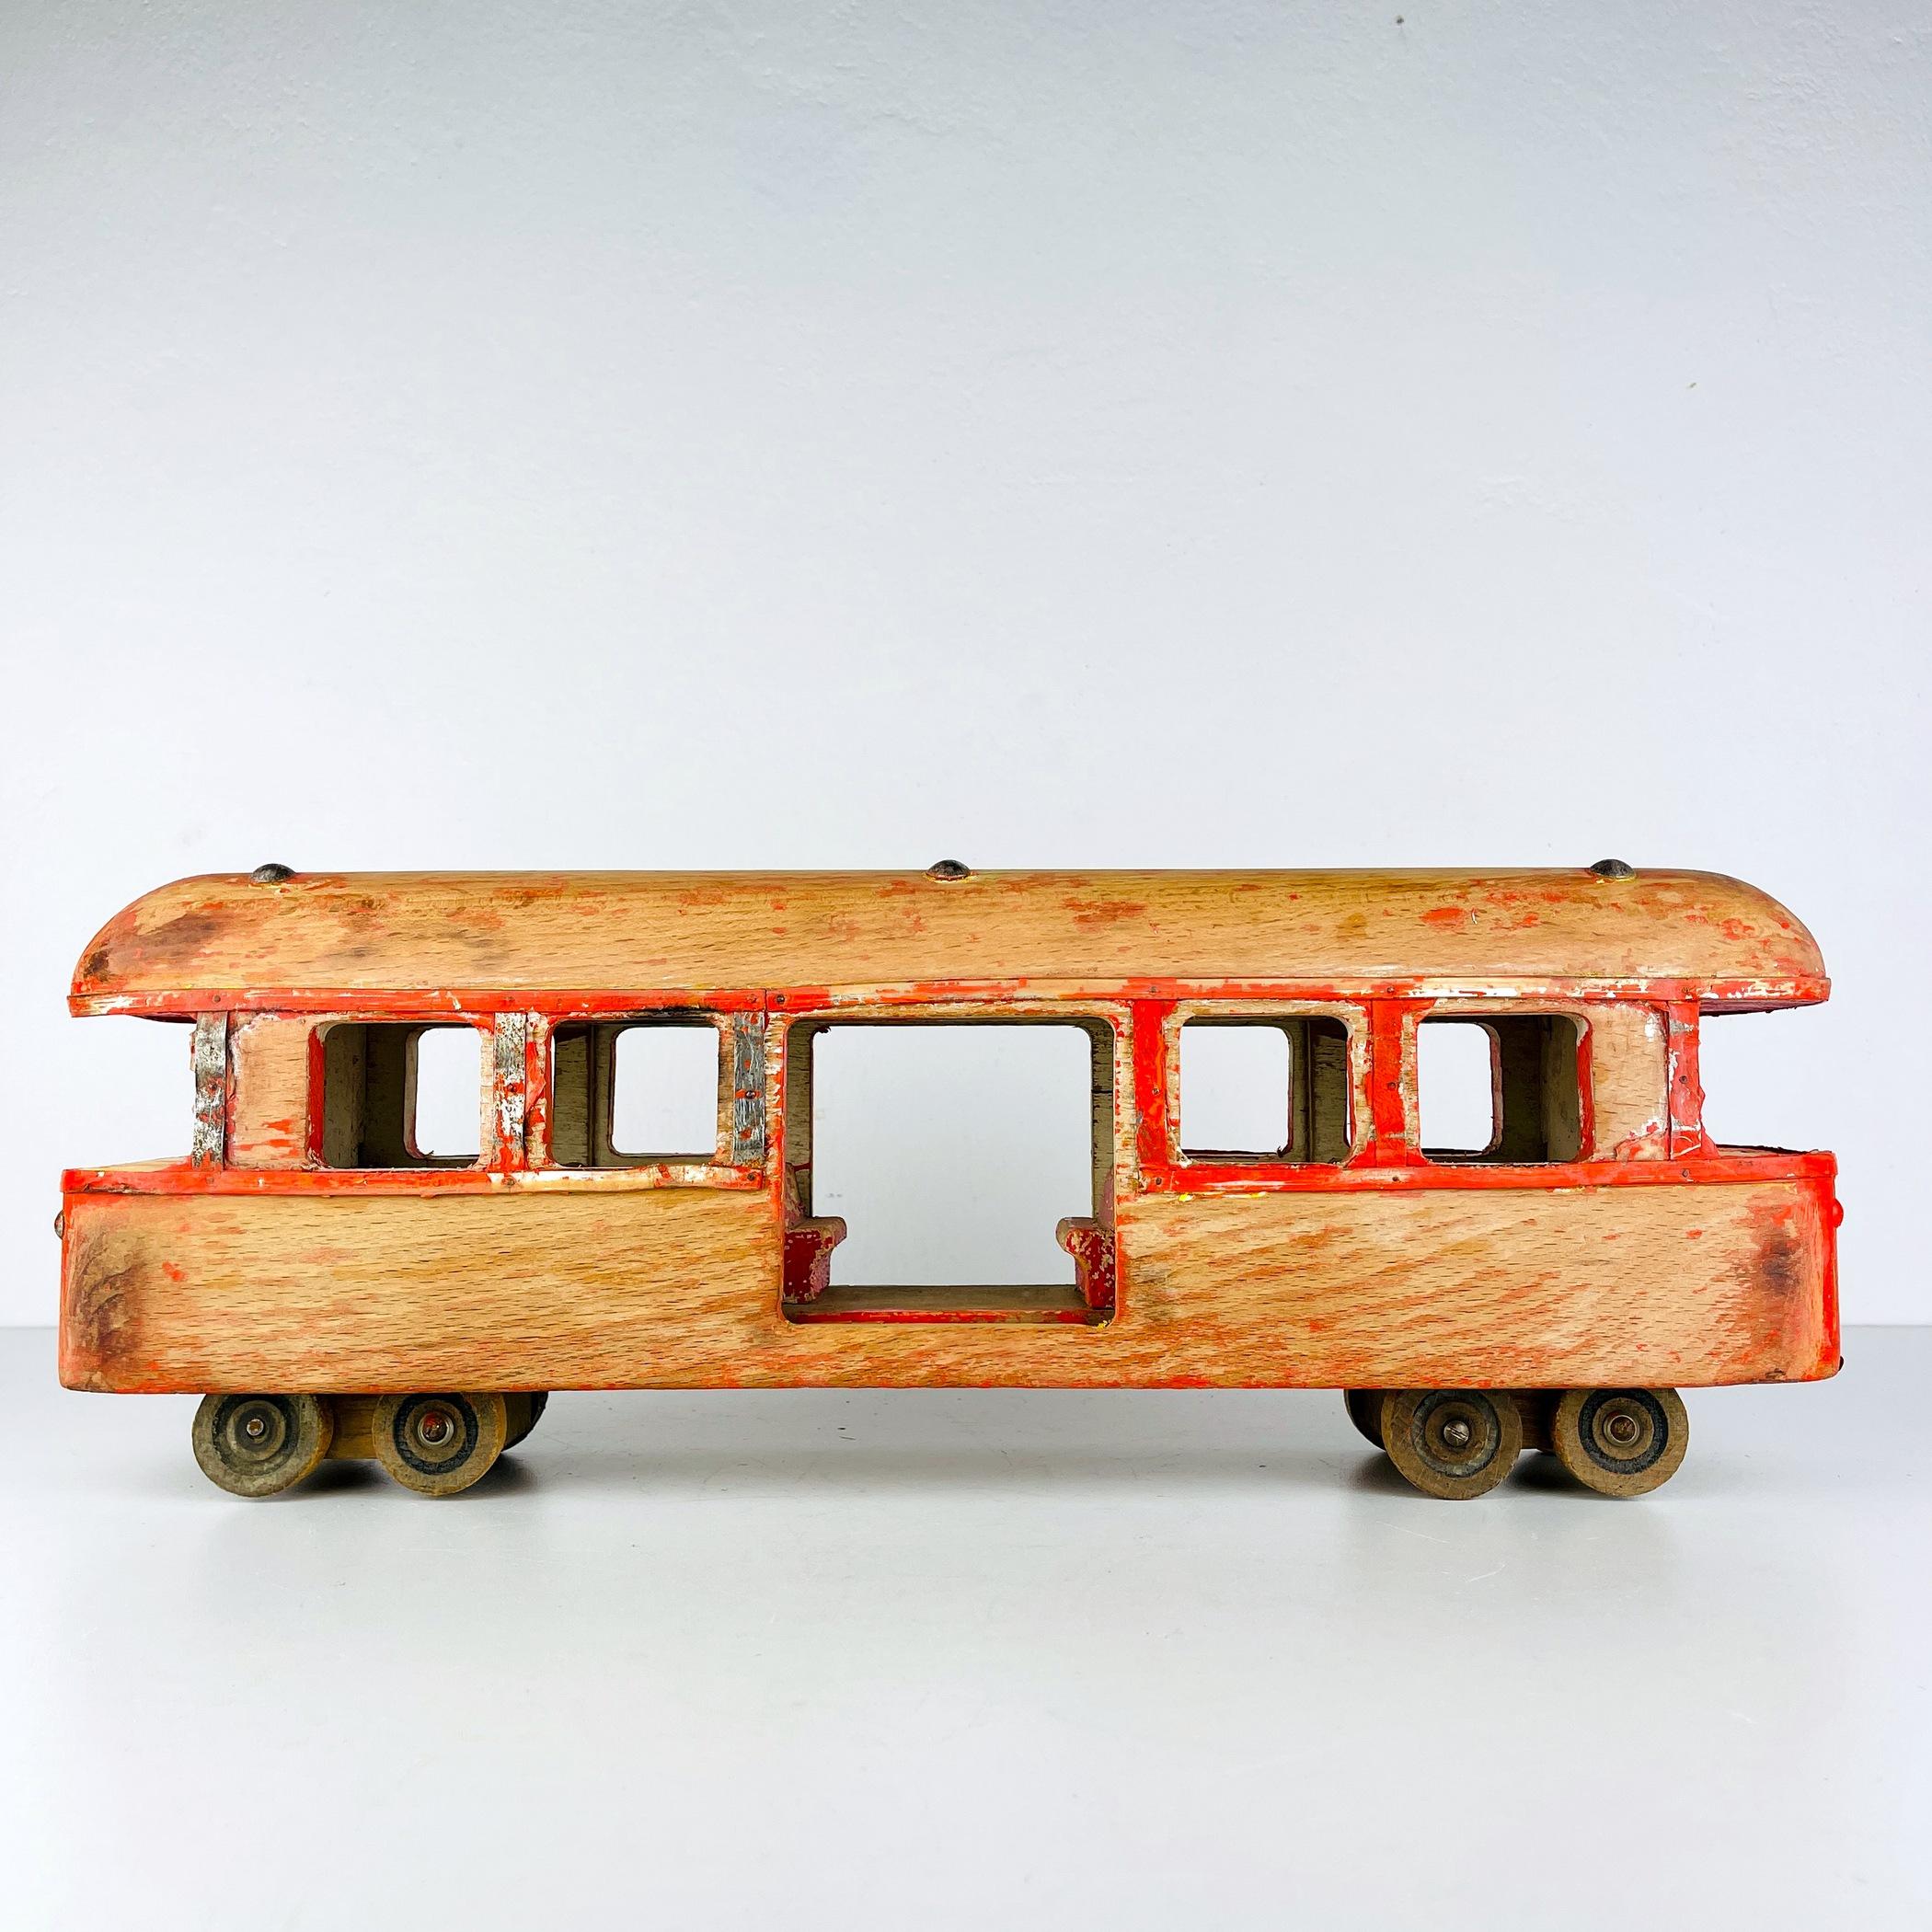 Vintage Holzeisenbahnwagen aus Italien, 1950er Jahre - Großes Dekorationsstück mit teilweise erhaltener Originalfarbe Tauchen Sie mit diesem unglaublichen Stück Geschichte in die Vergangenheit ein - ein Vintage Holzeisenbahnwagen aus Italien, der